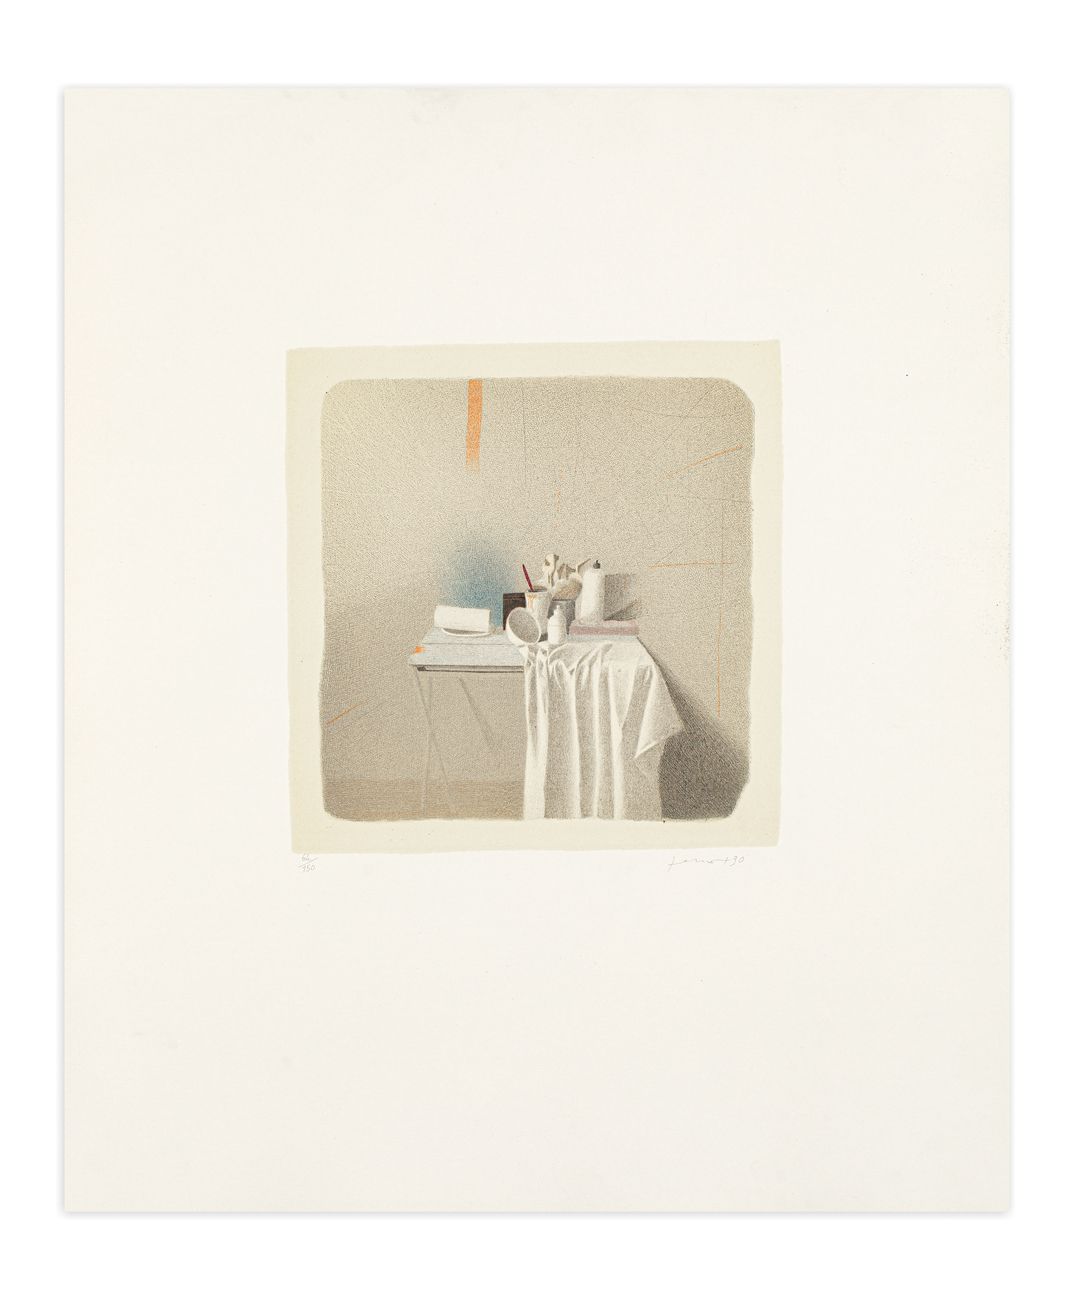 GIANFRANCO FERRONI (1927-2001) - Diversi oggetti e panneggio, 1990 背景石版画

60x50厘&hellip;